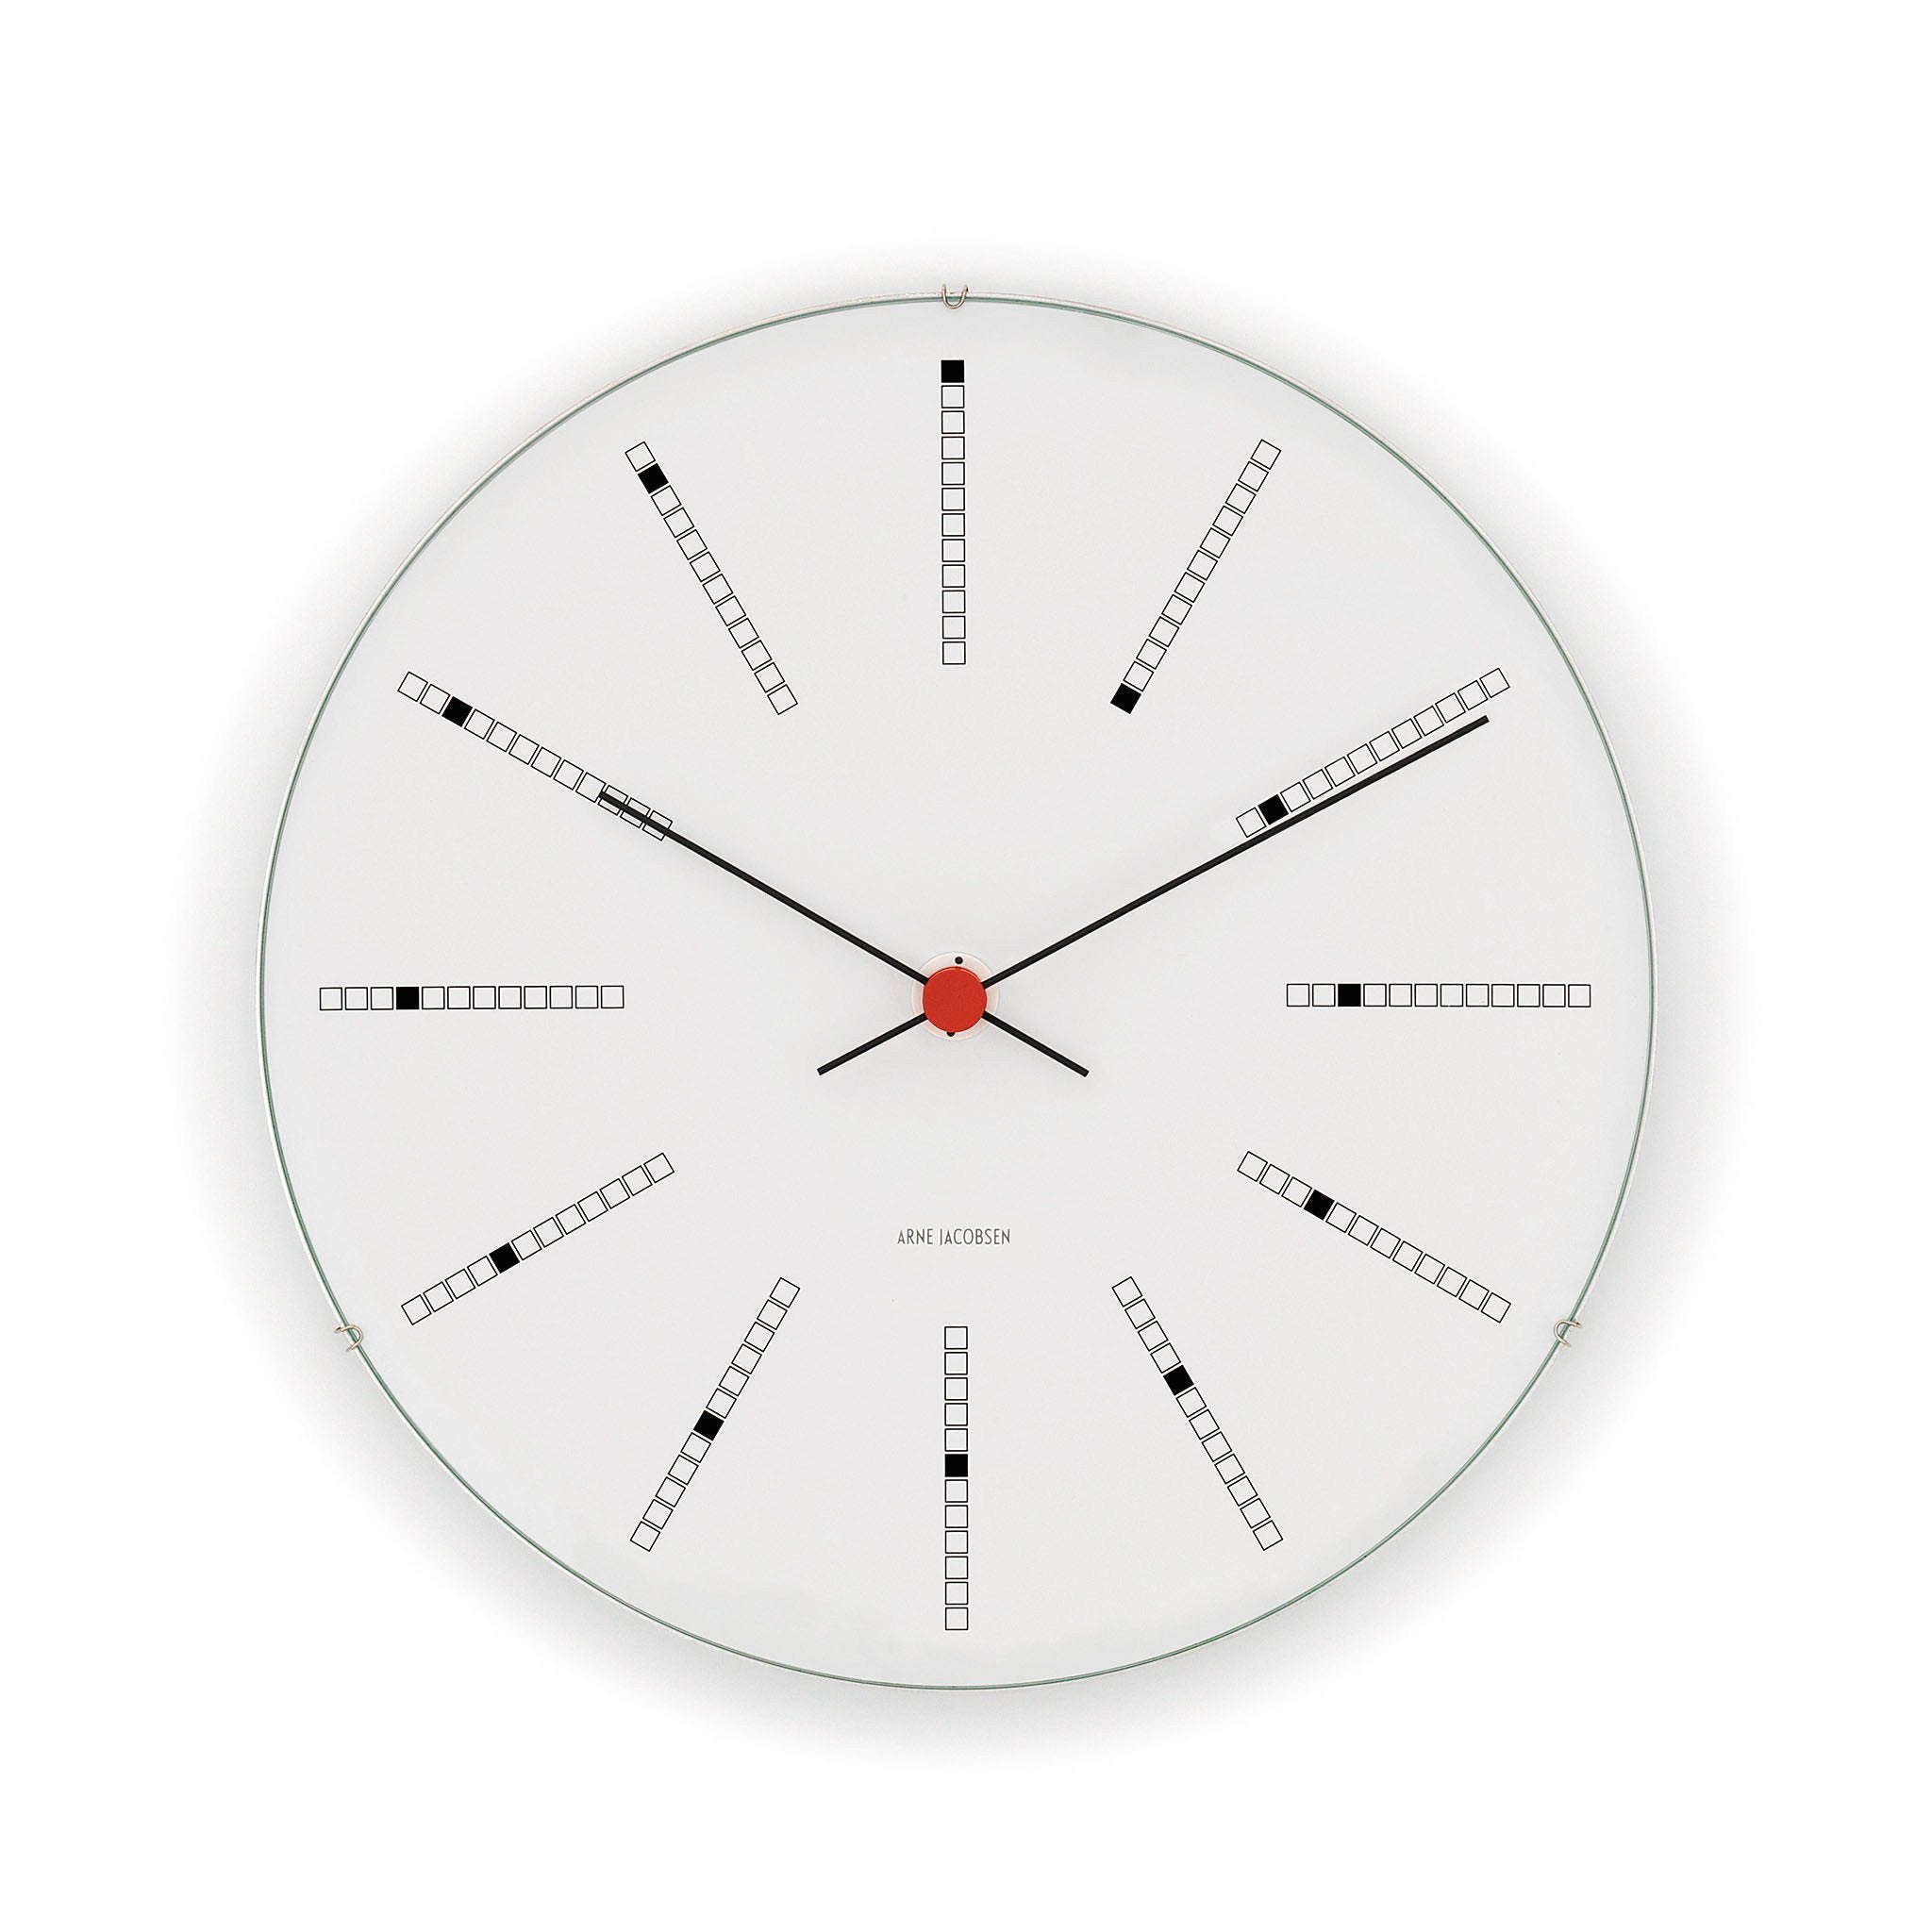 Arne Jacobsen Bankers Wall Clock, 8.3" / 21 cm